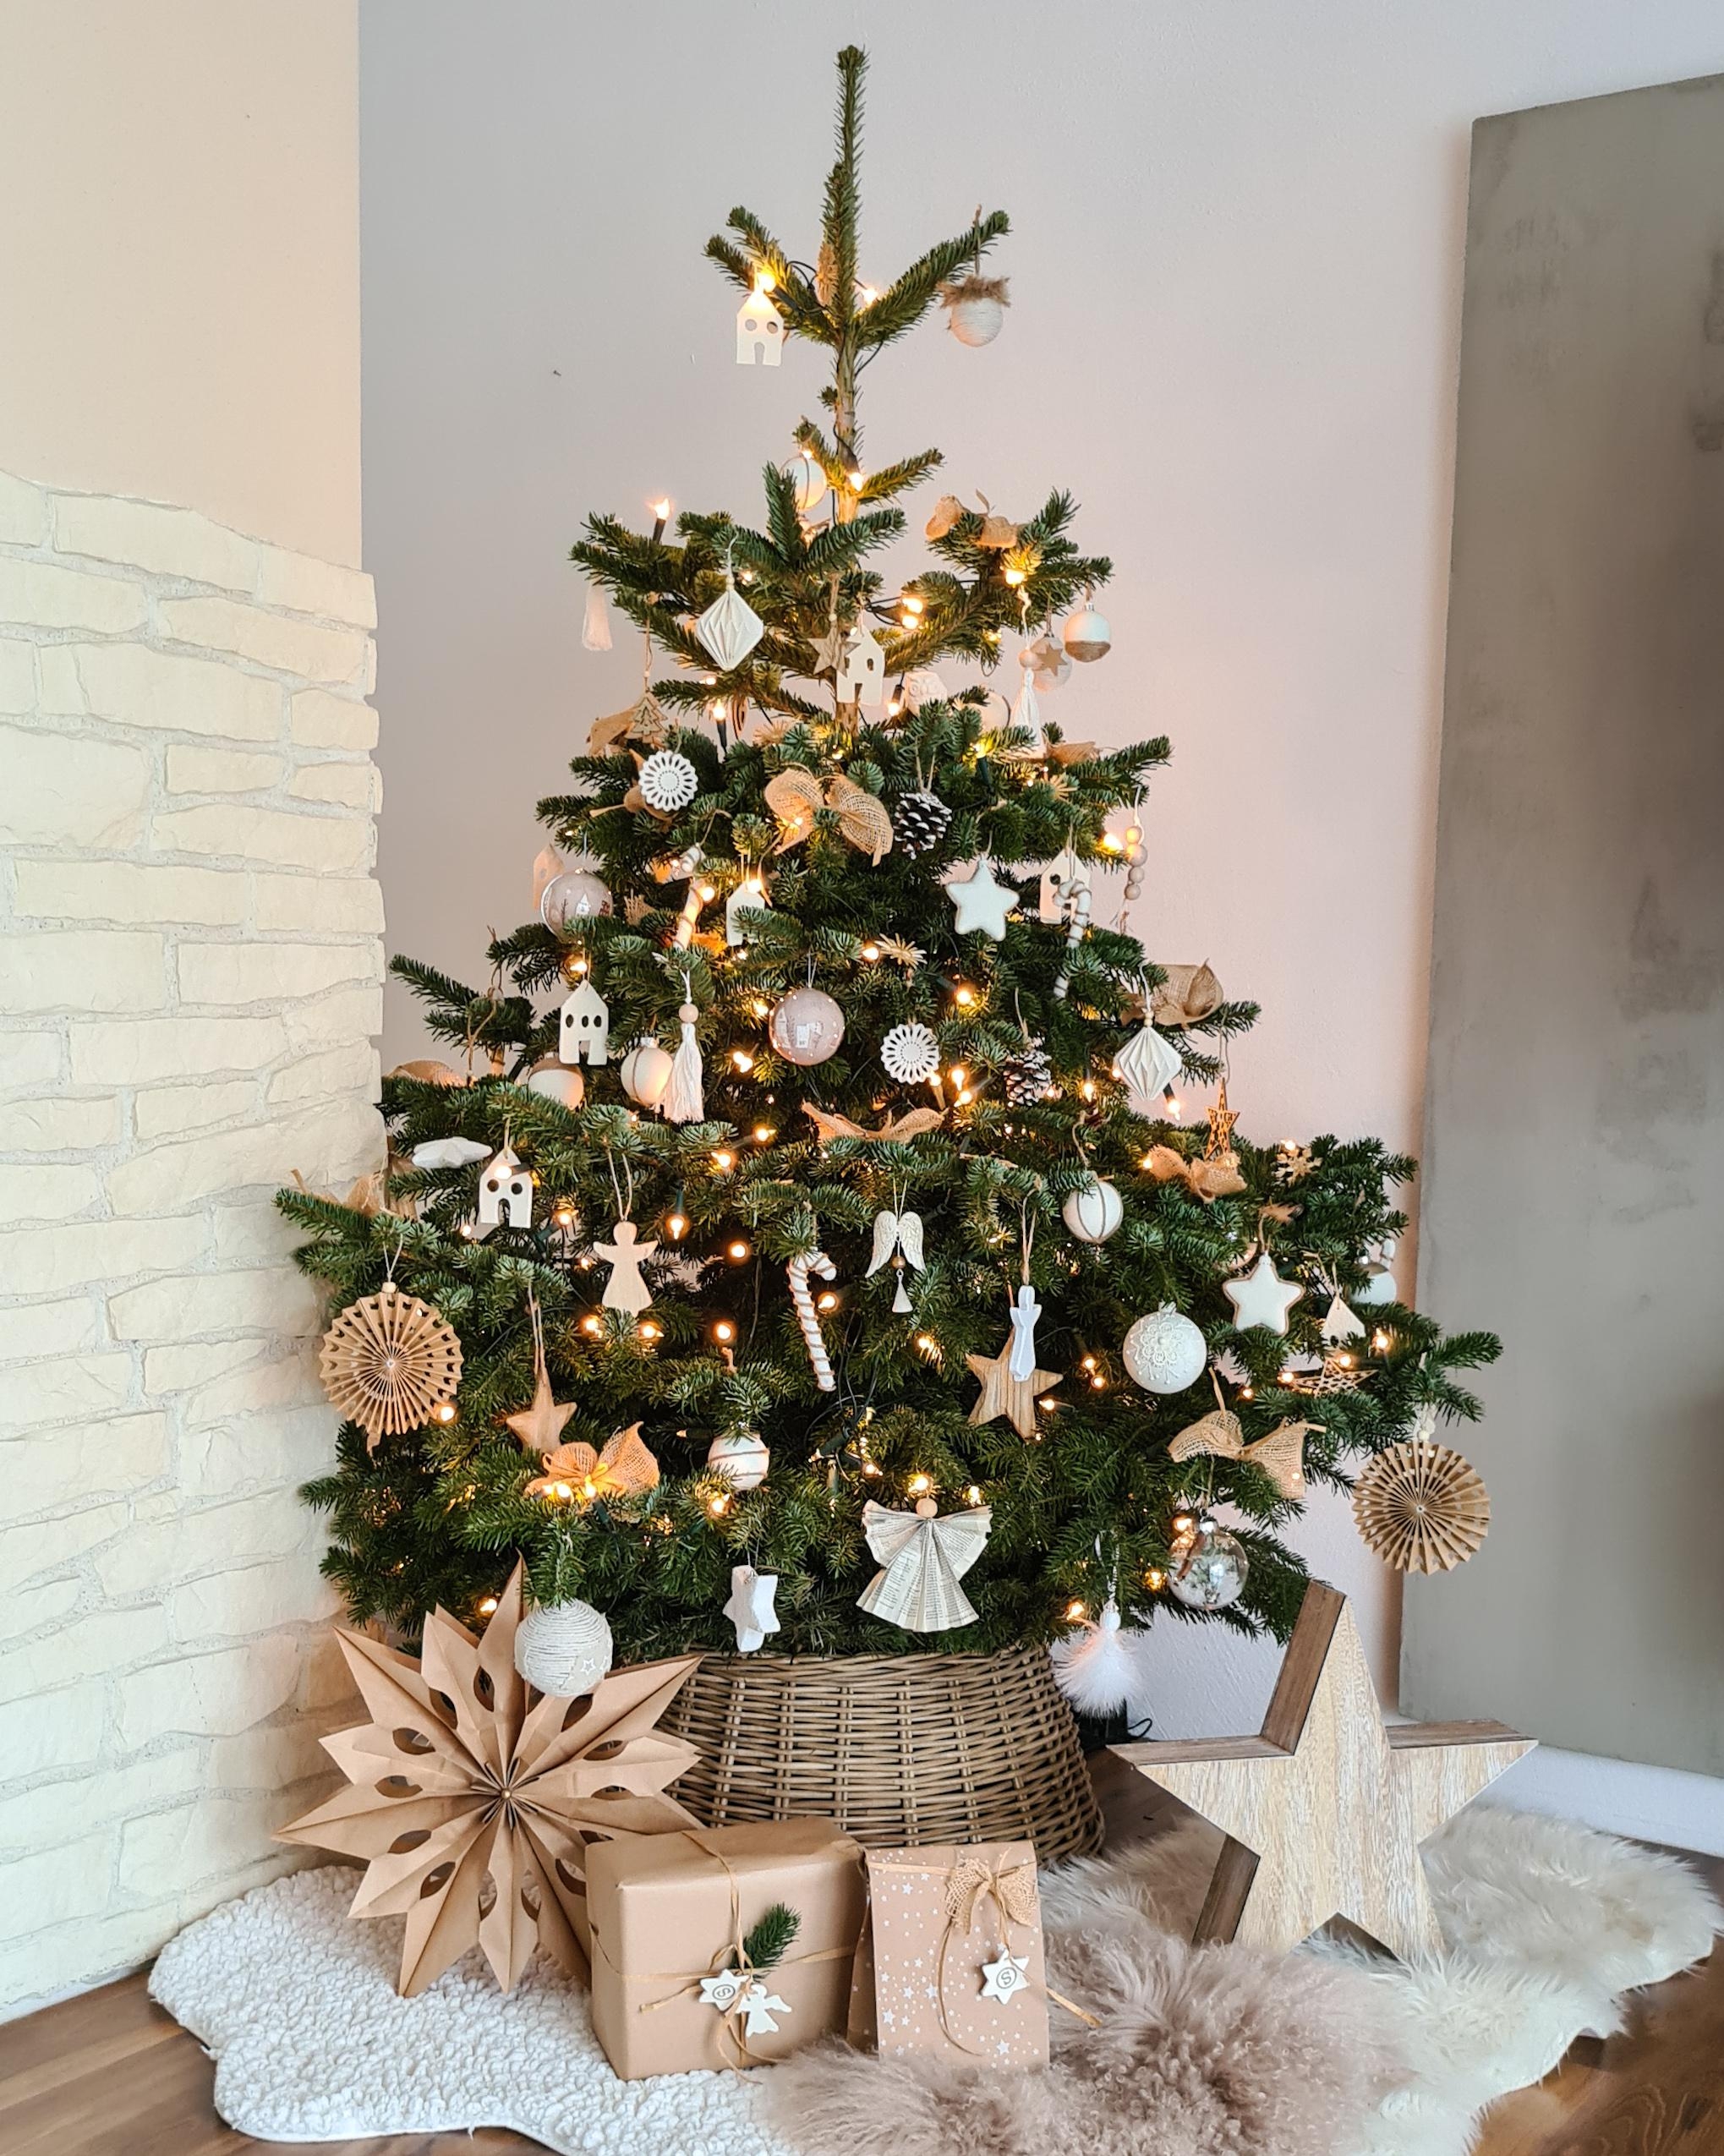 #weihnachtsbaum #weihnachten #advent #baumschmuck #tannenbaum #christbaum